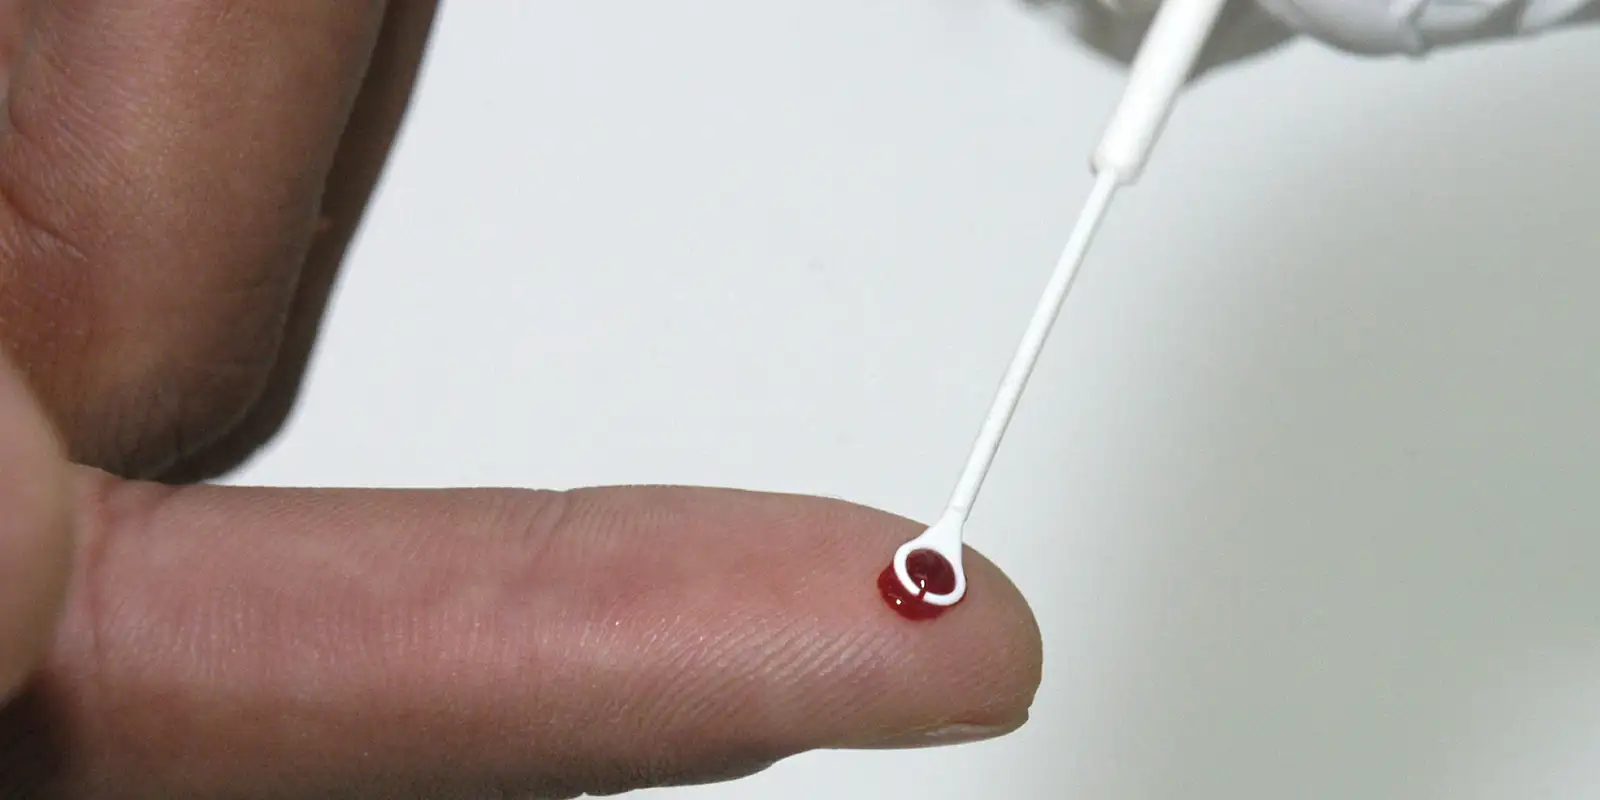 Saúde amplia vacinação contra o HPV para quem usa PrEP